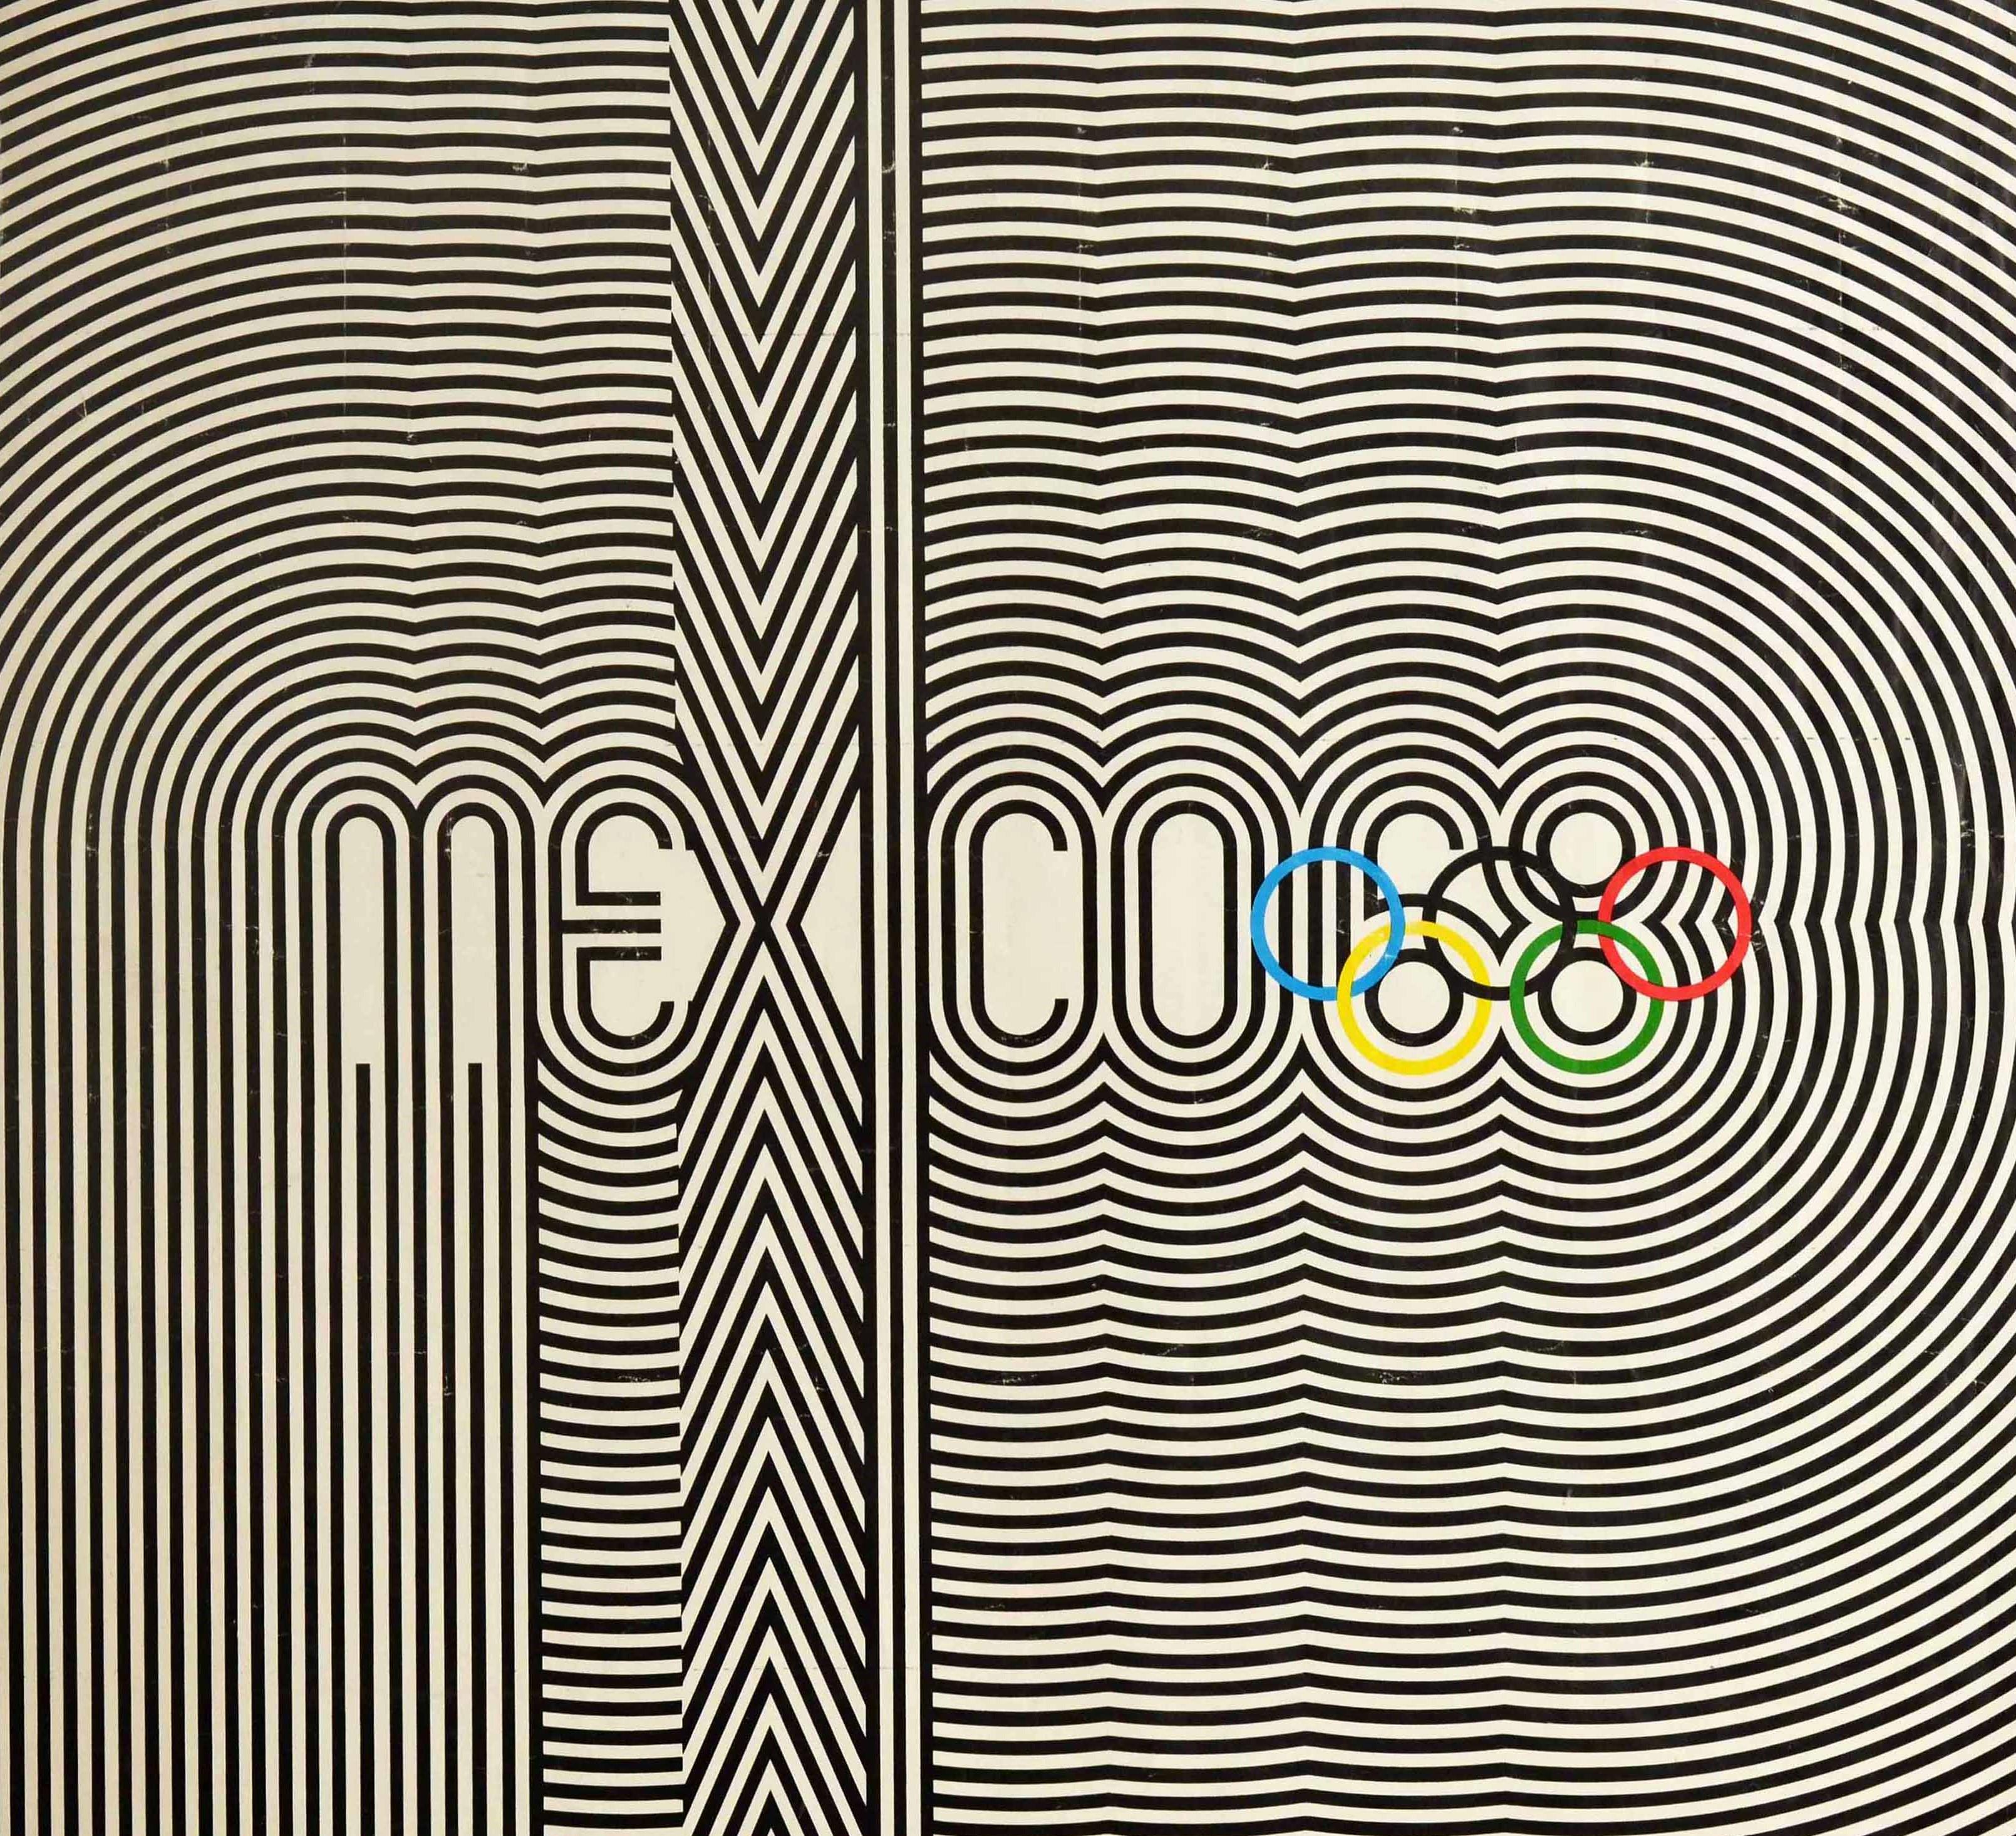 mexico 1968 logo